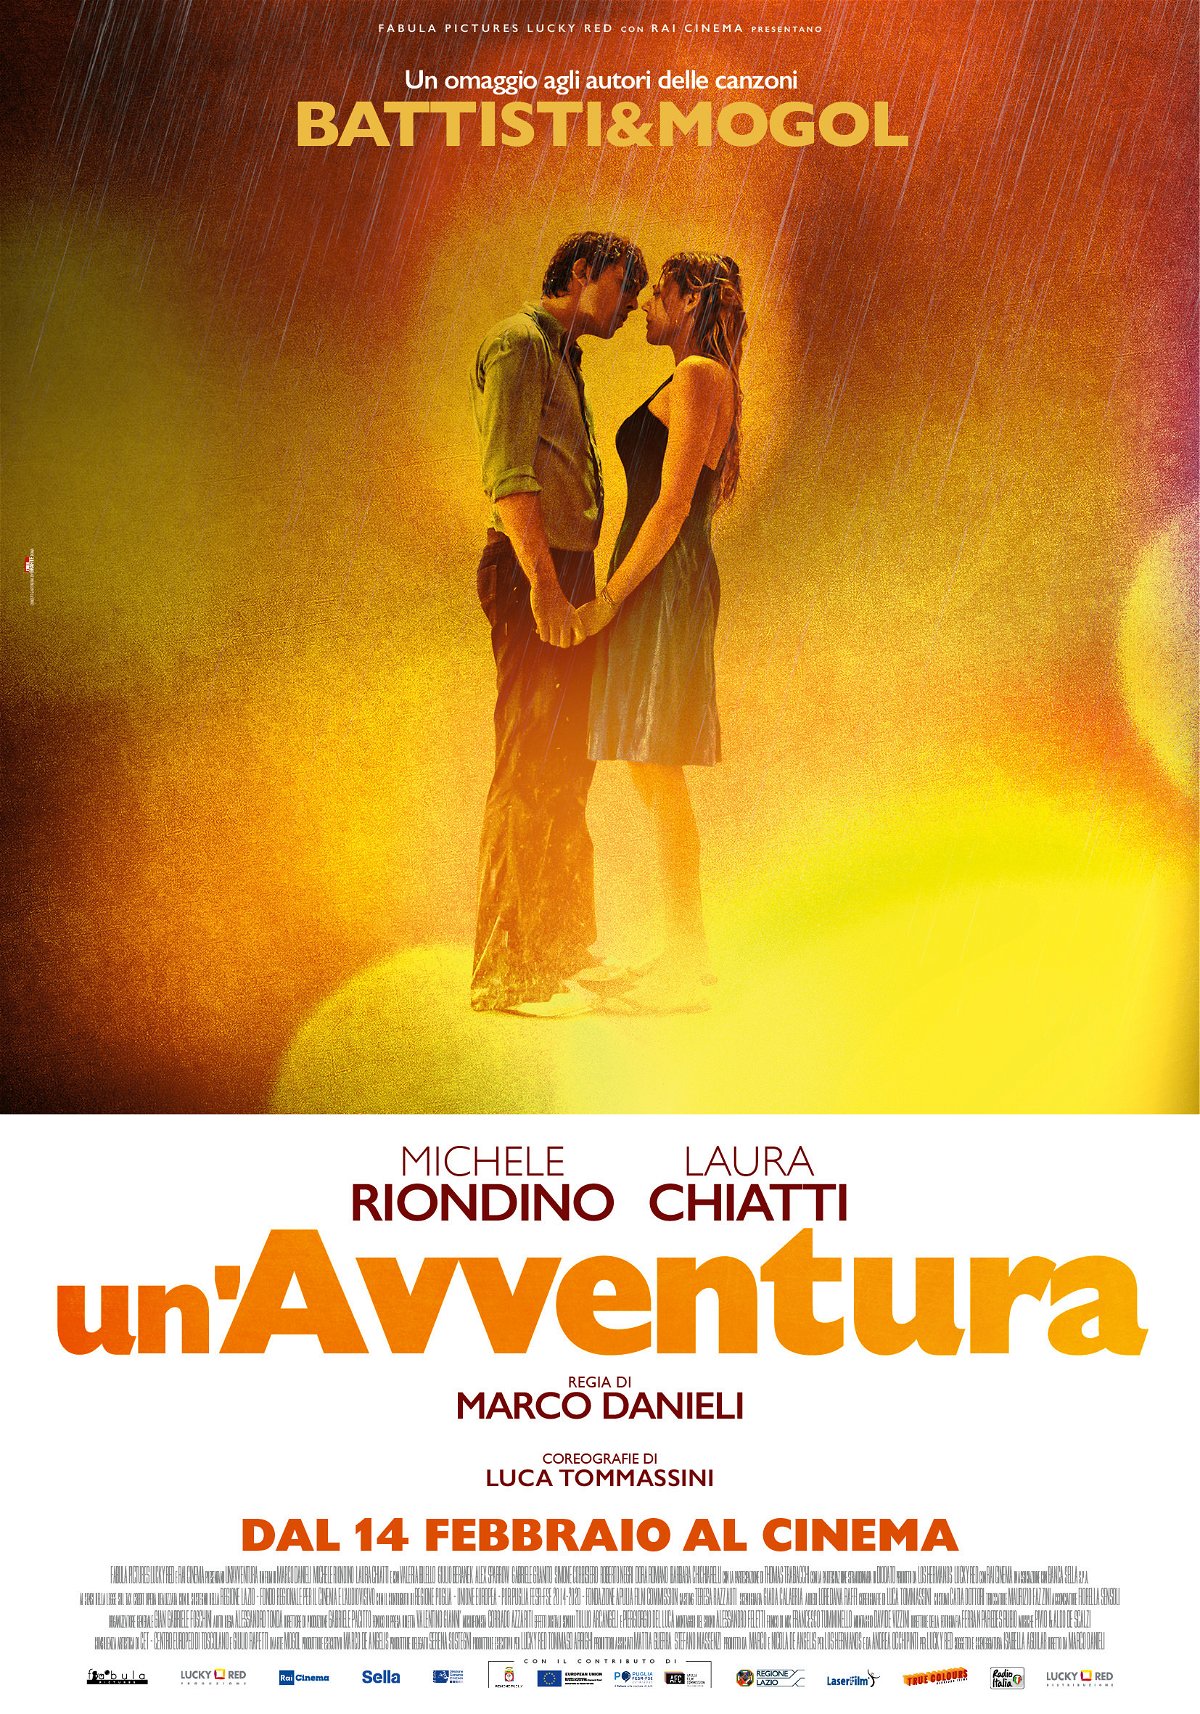 La locandina del film UN'avventura, l'omaggio alla coppia Mogol-Battisti